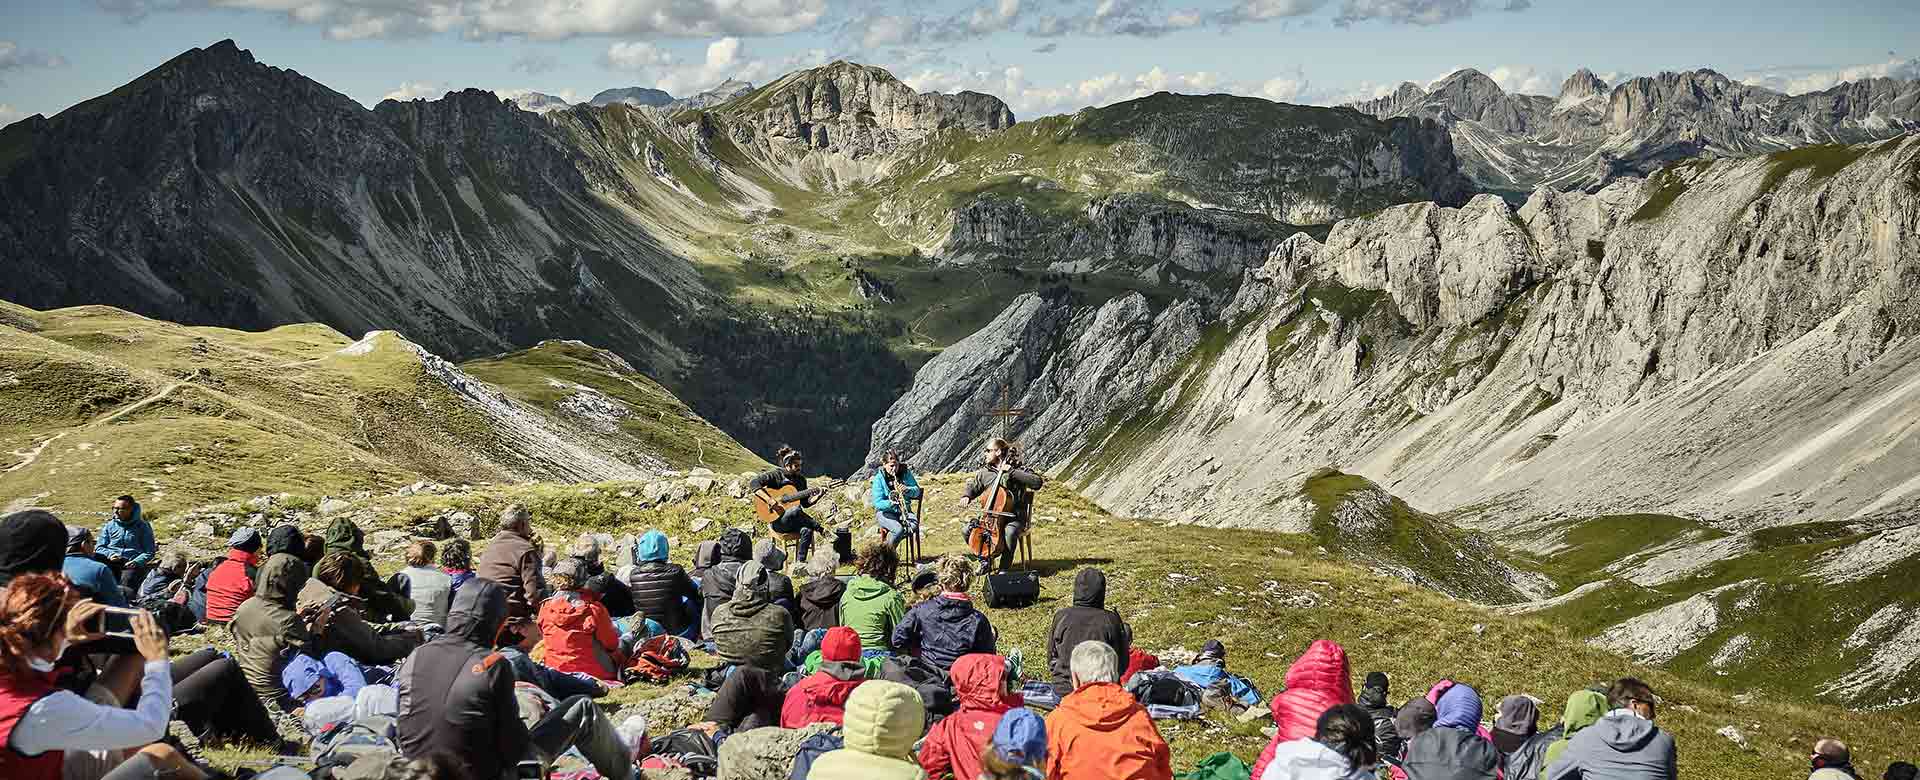 I Suoni della Dolomiti - Val di Fassa - Gruppo Costabella - Rifugio Bergvagabunden ©Trentino Marketing/Alexander Debiasi